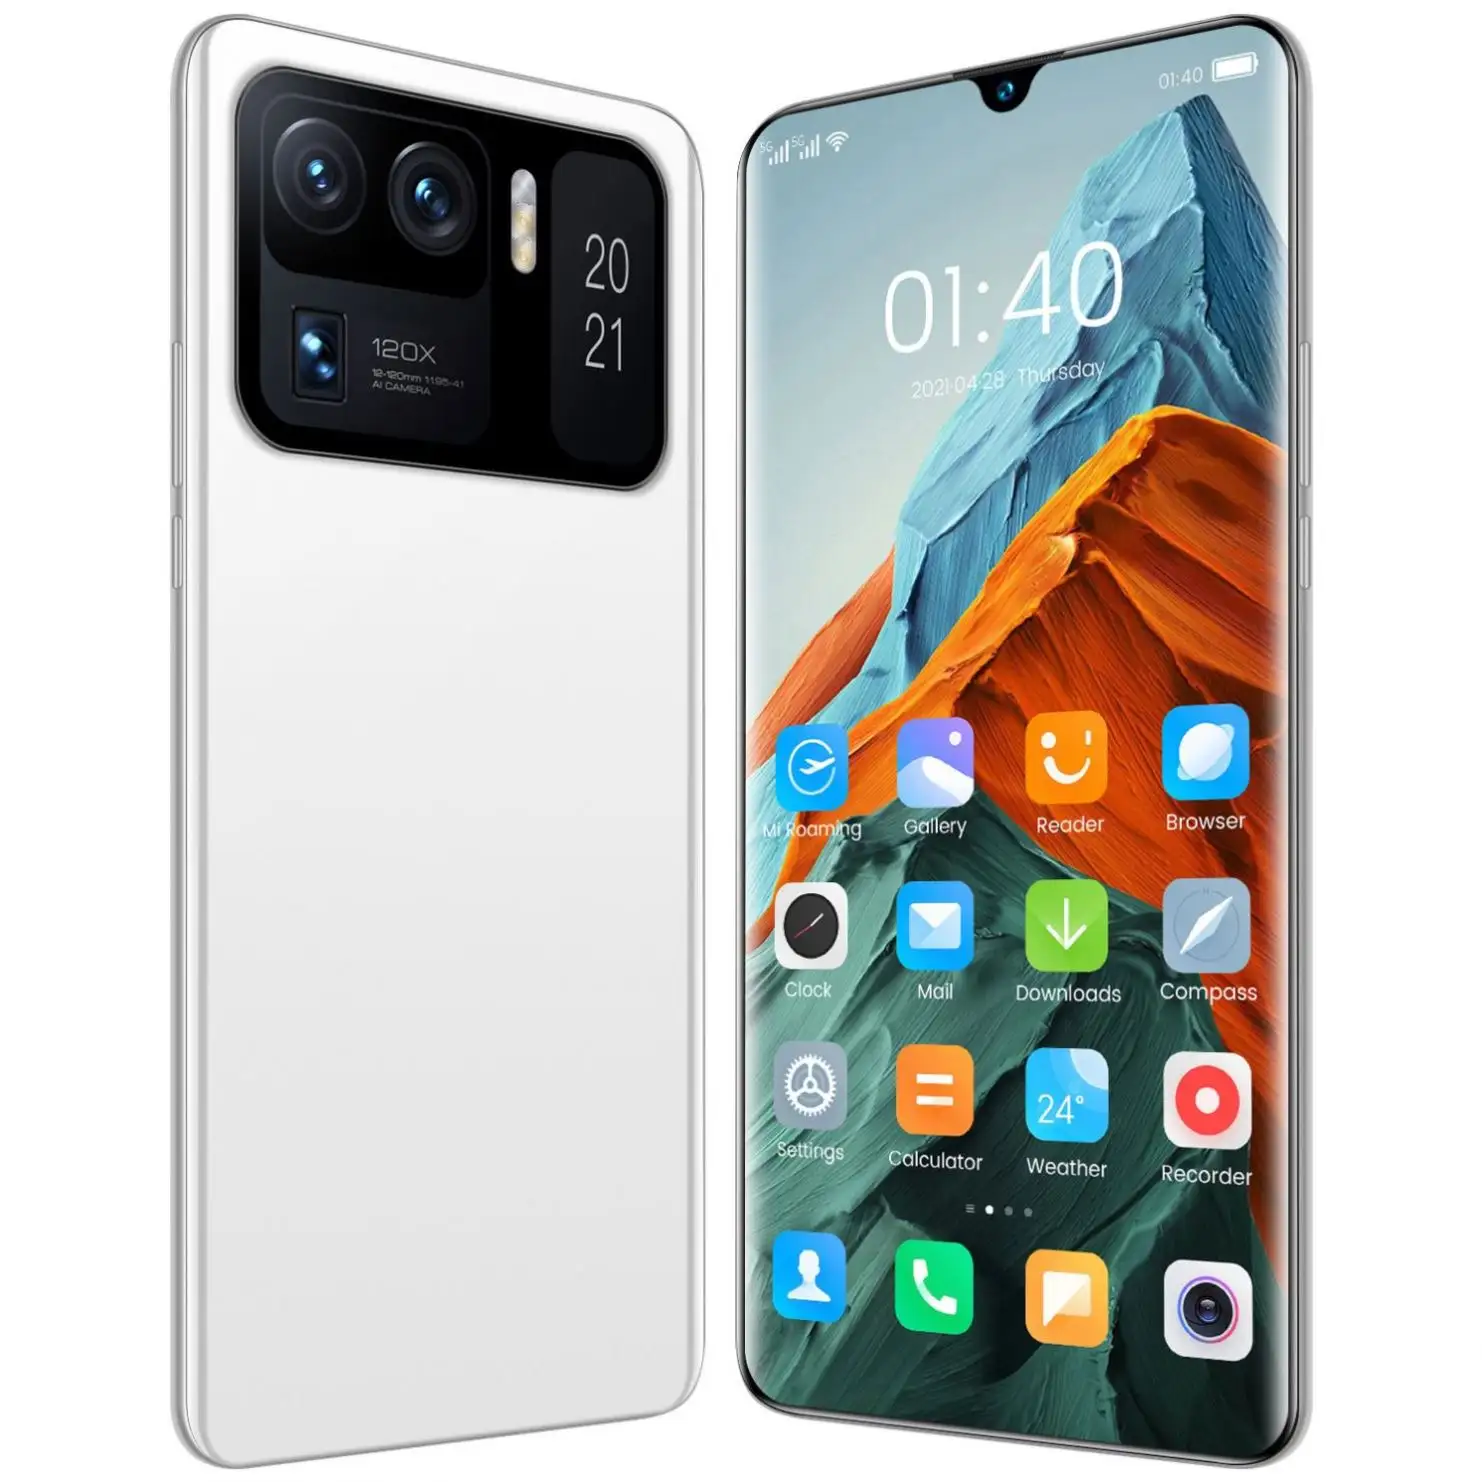 Smartphone mi m11 ultra desbloqueado com frete grátis, celular original com dual sim, gps, wifi, desbloqueado, 5g, android